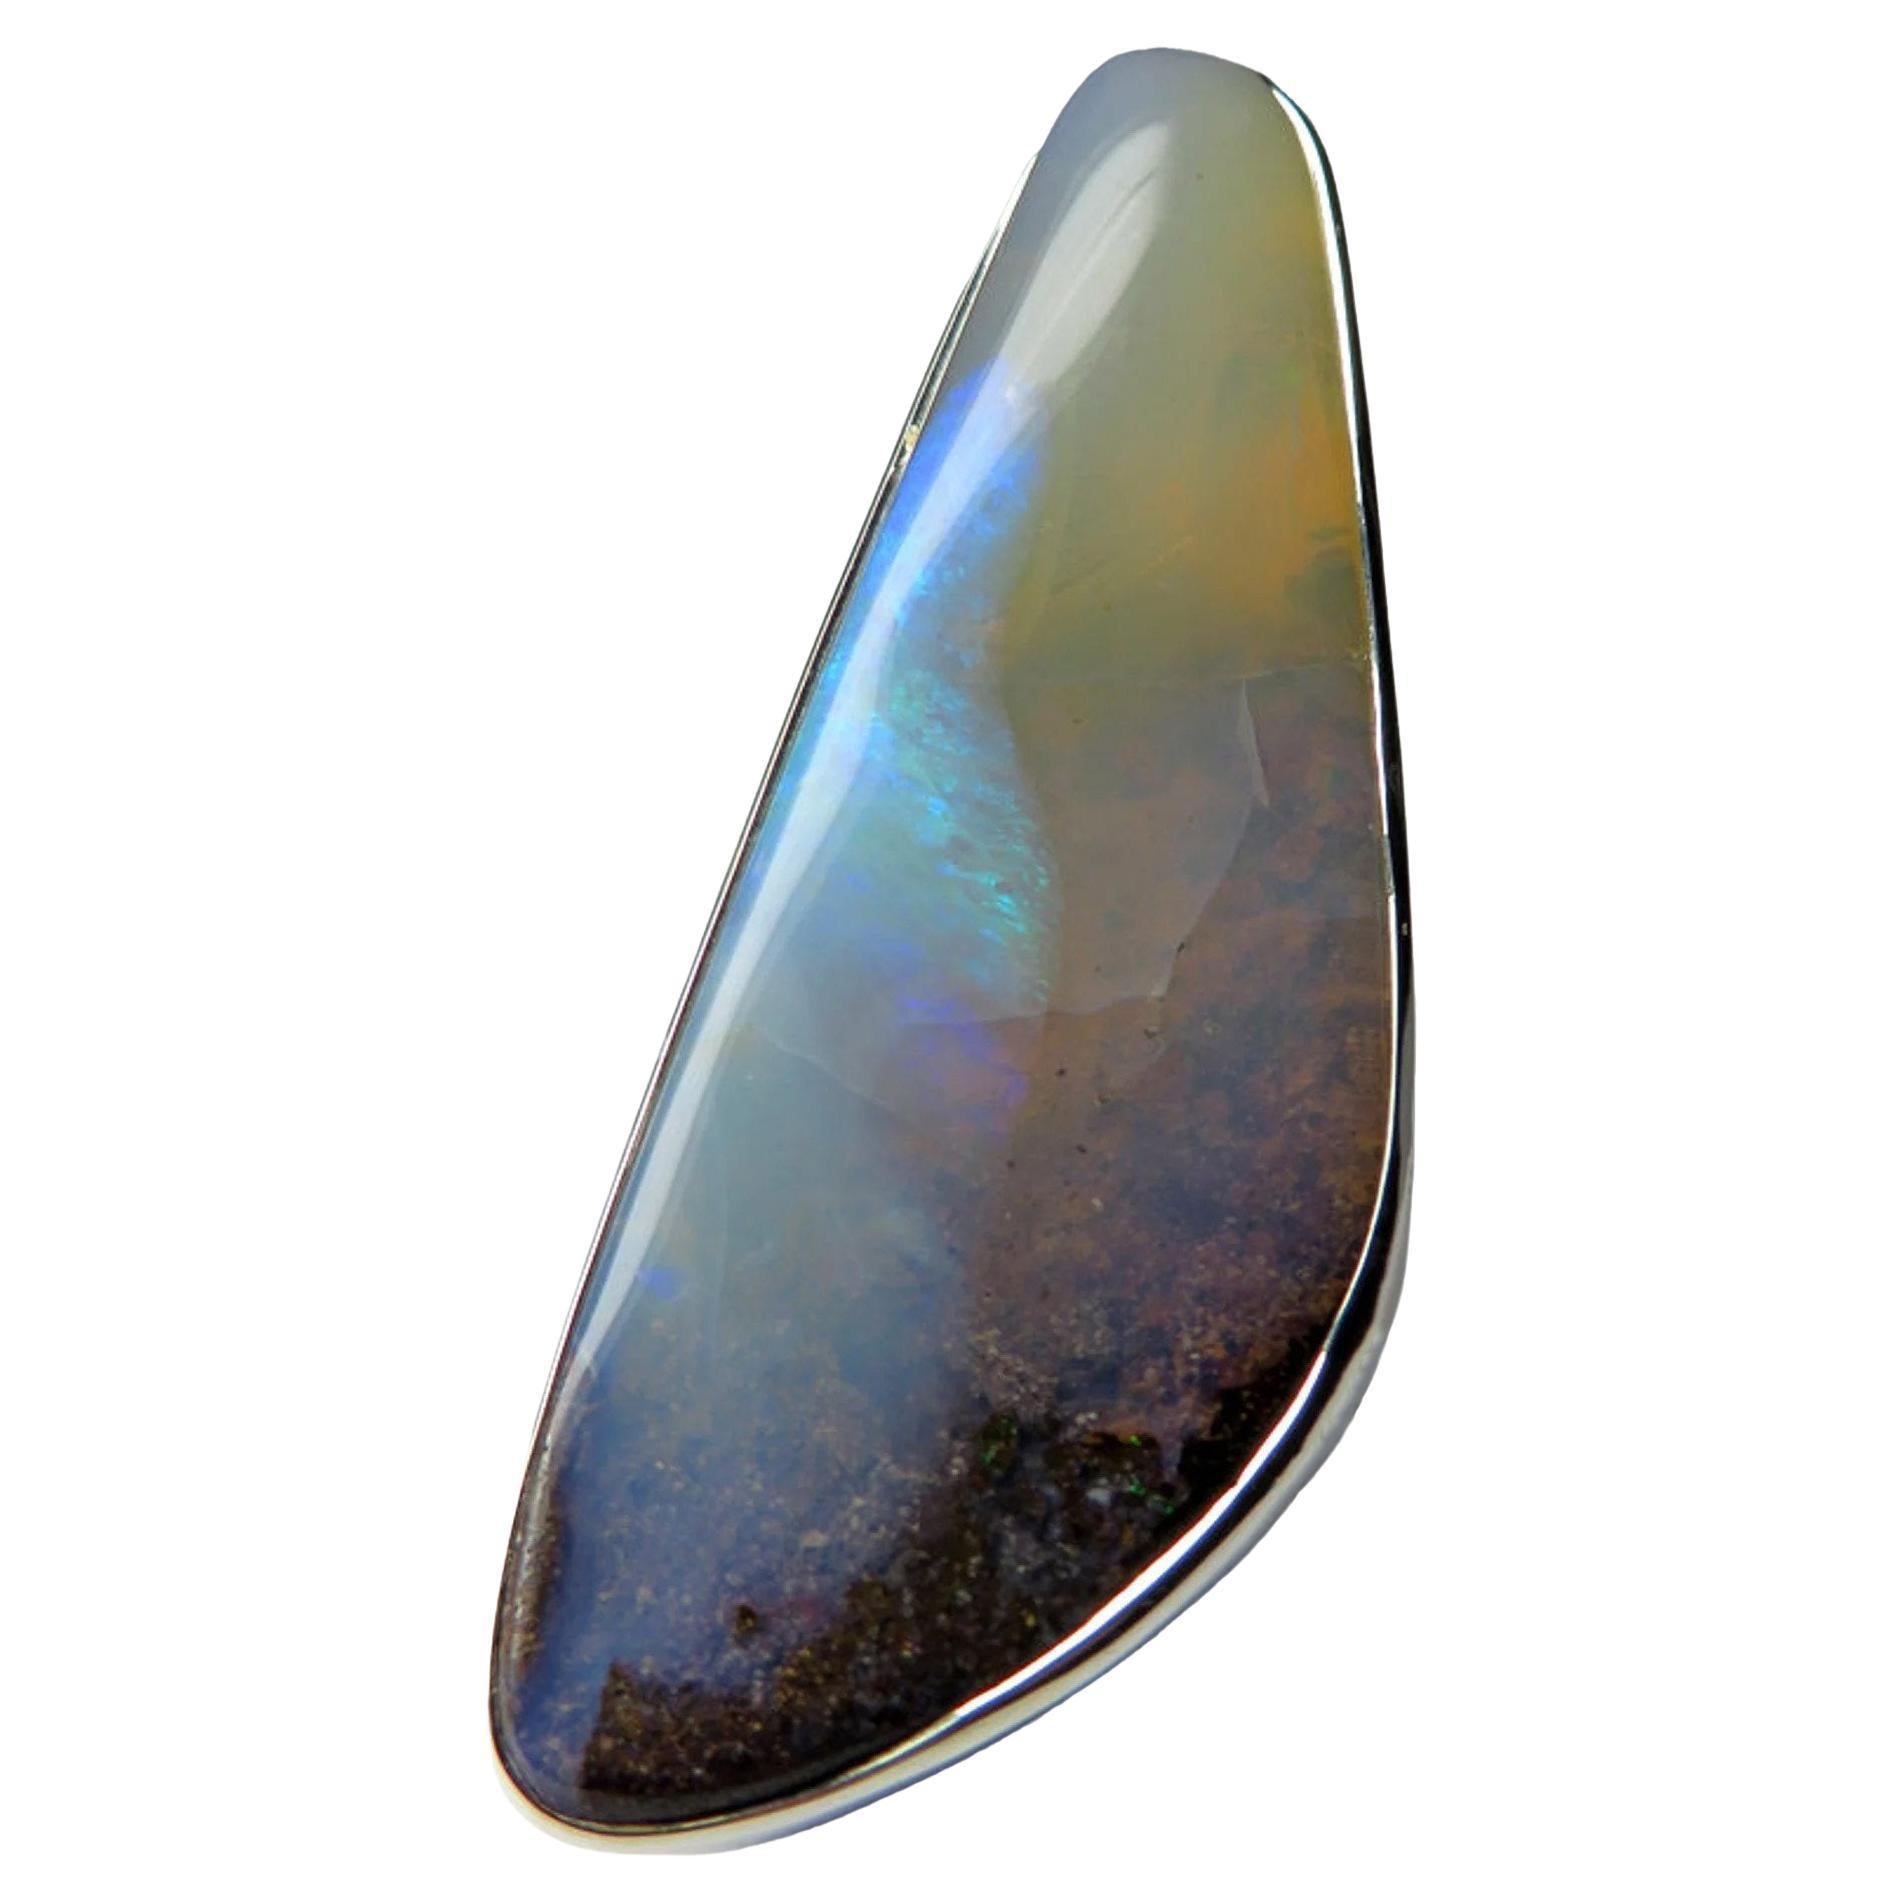 Großer Silberanhänger mit natürlichem Boulder Opal
Opal Herkunft - Australien 
Gewicht des Opals - 83 Karat
Gewicht des Anhängers - 24.97 Gramm
Höhe des Pendels - 2,76 Zoll / 70 mm
Abmessungen des Opals - 0,55 x 0,71 x 1,89 in / 14 х 18 х 48